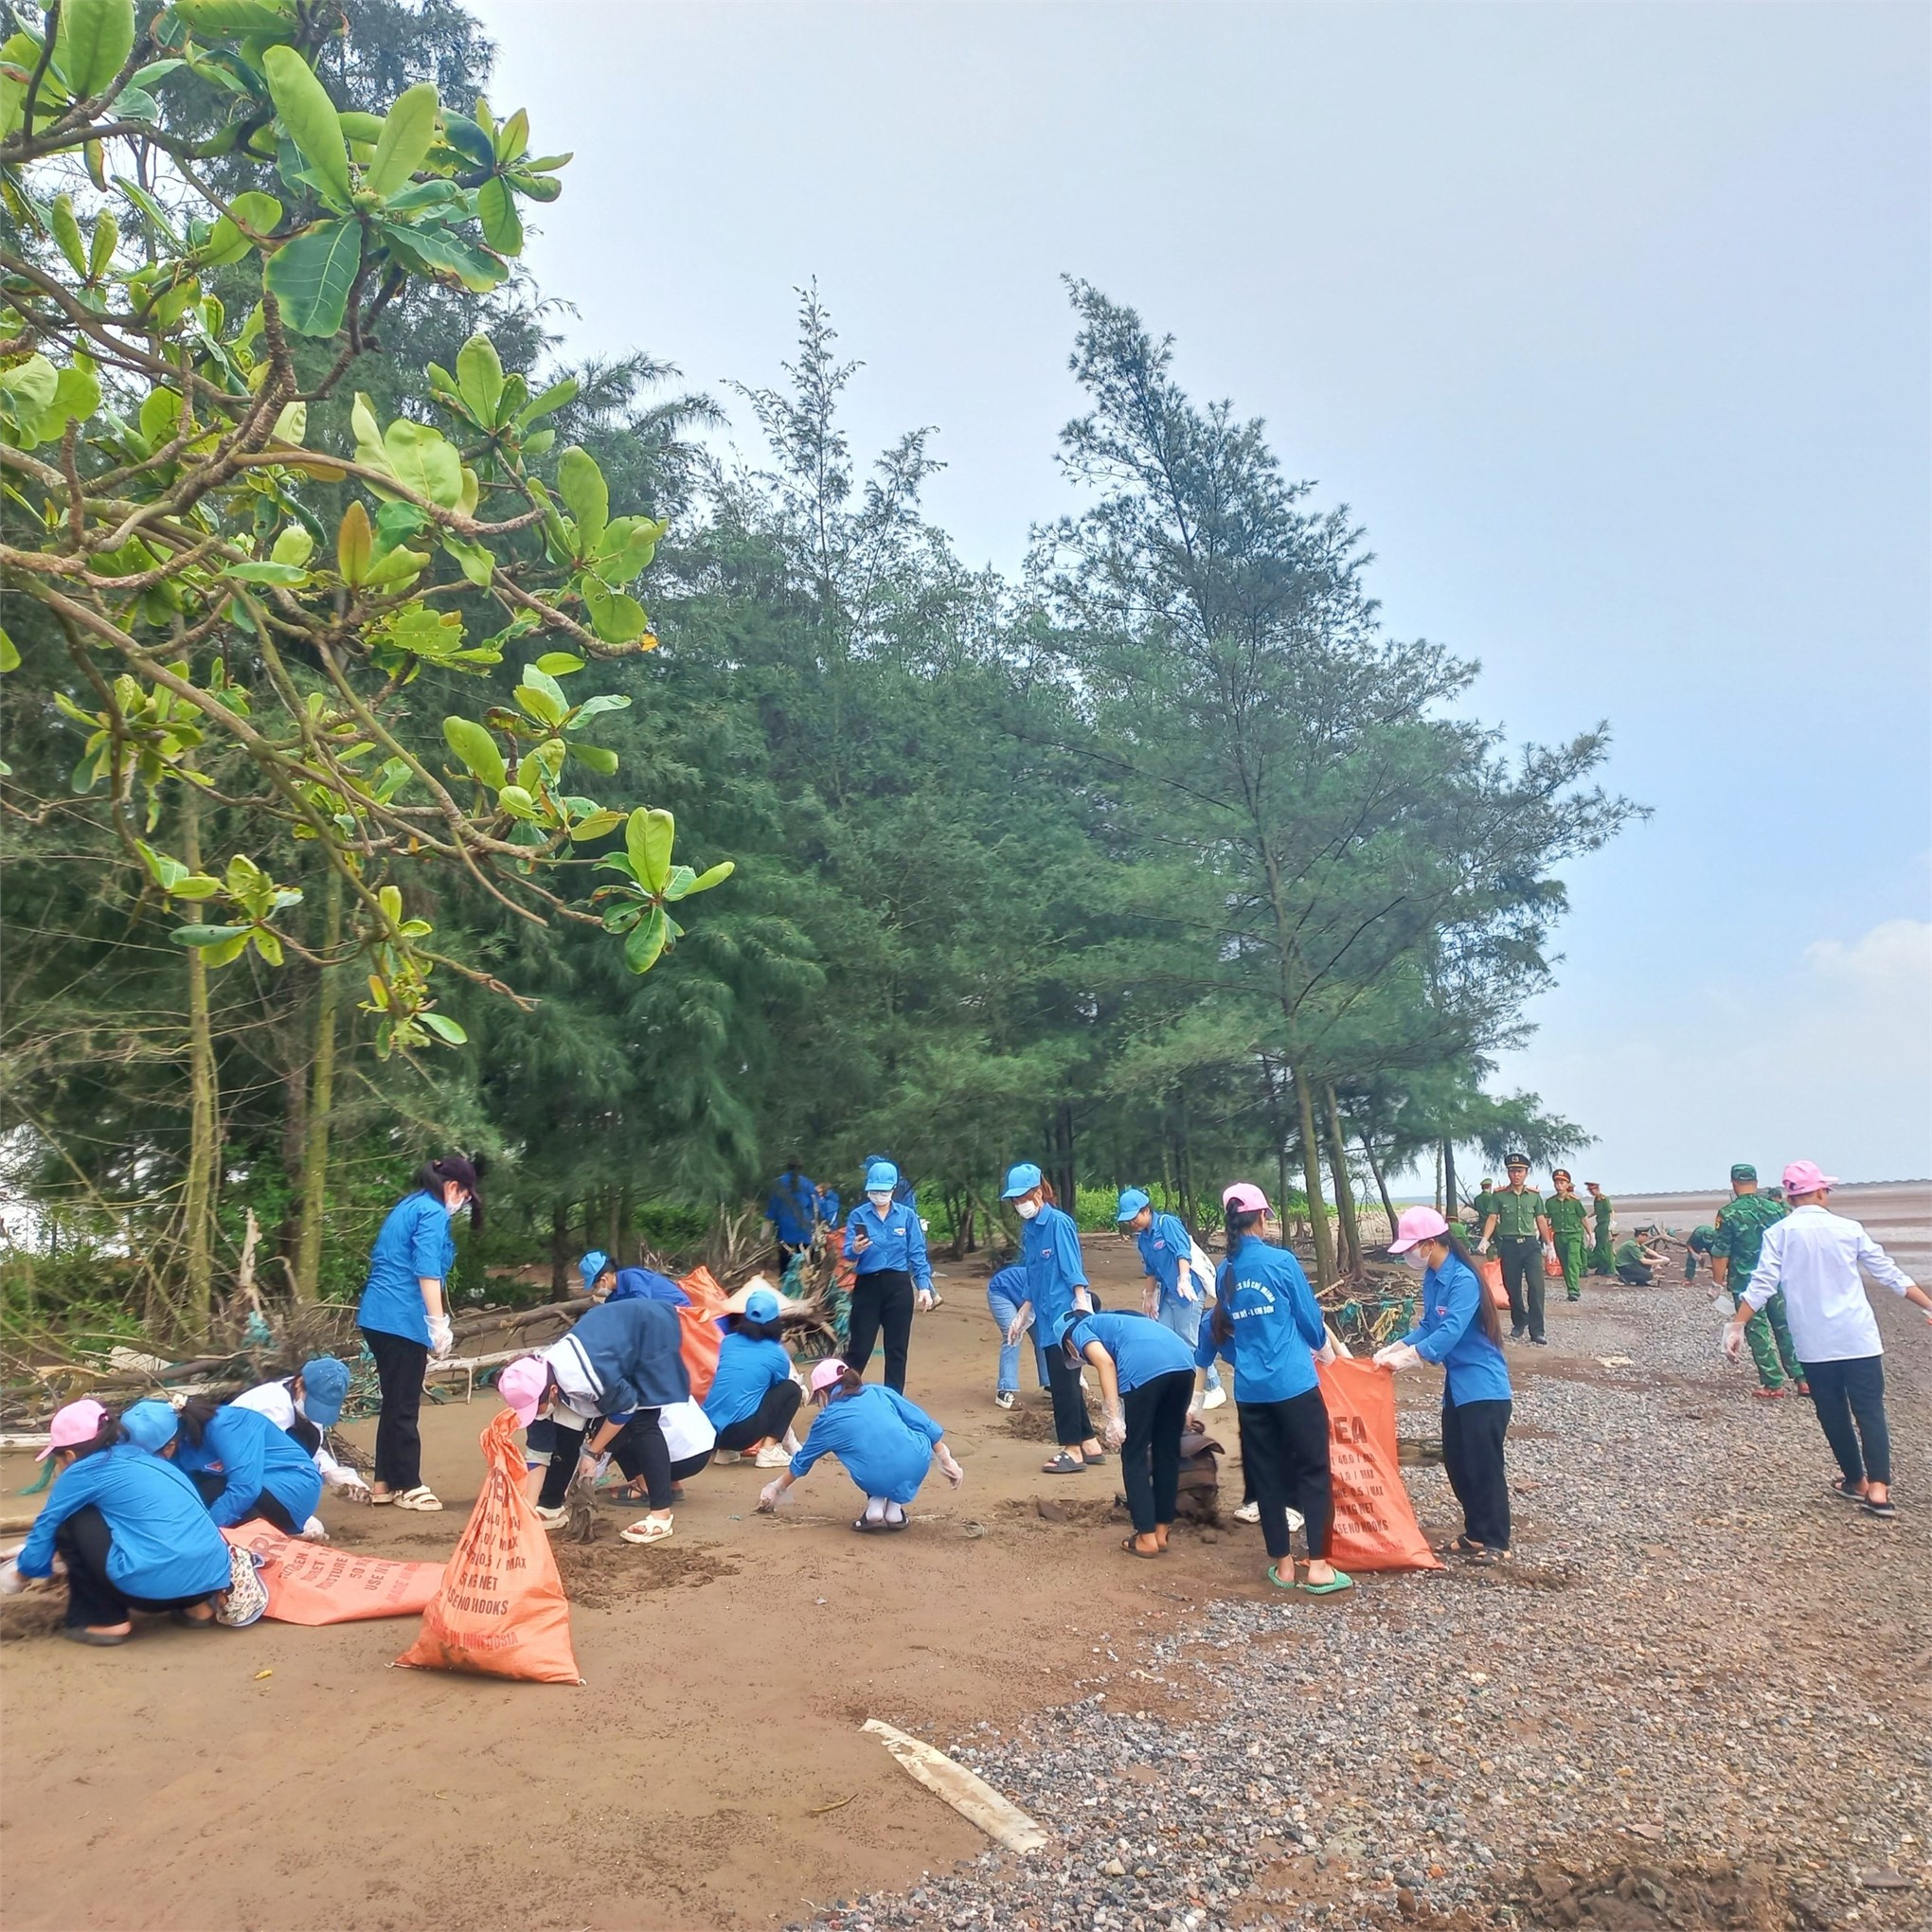 Đoàn viên, hội viên trường Đại học Hoa Lư tham gia Chương trình làm sạch biển tại xã Cồn Nổi, Huyện Kim Sơn